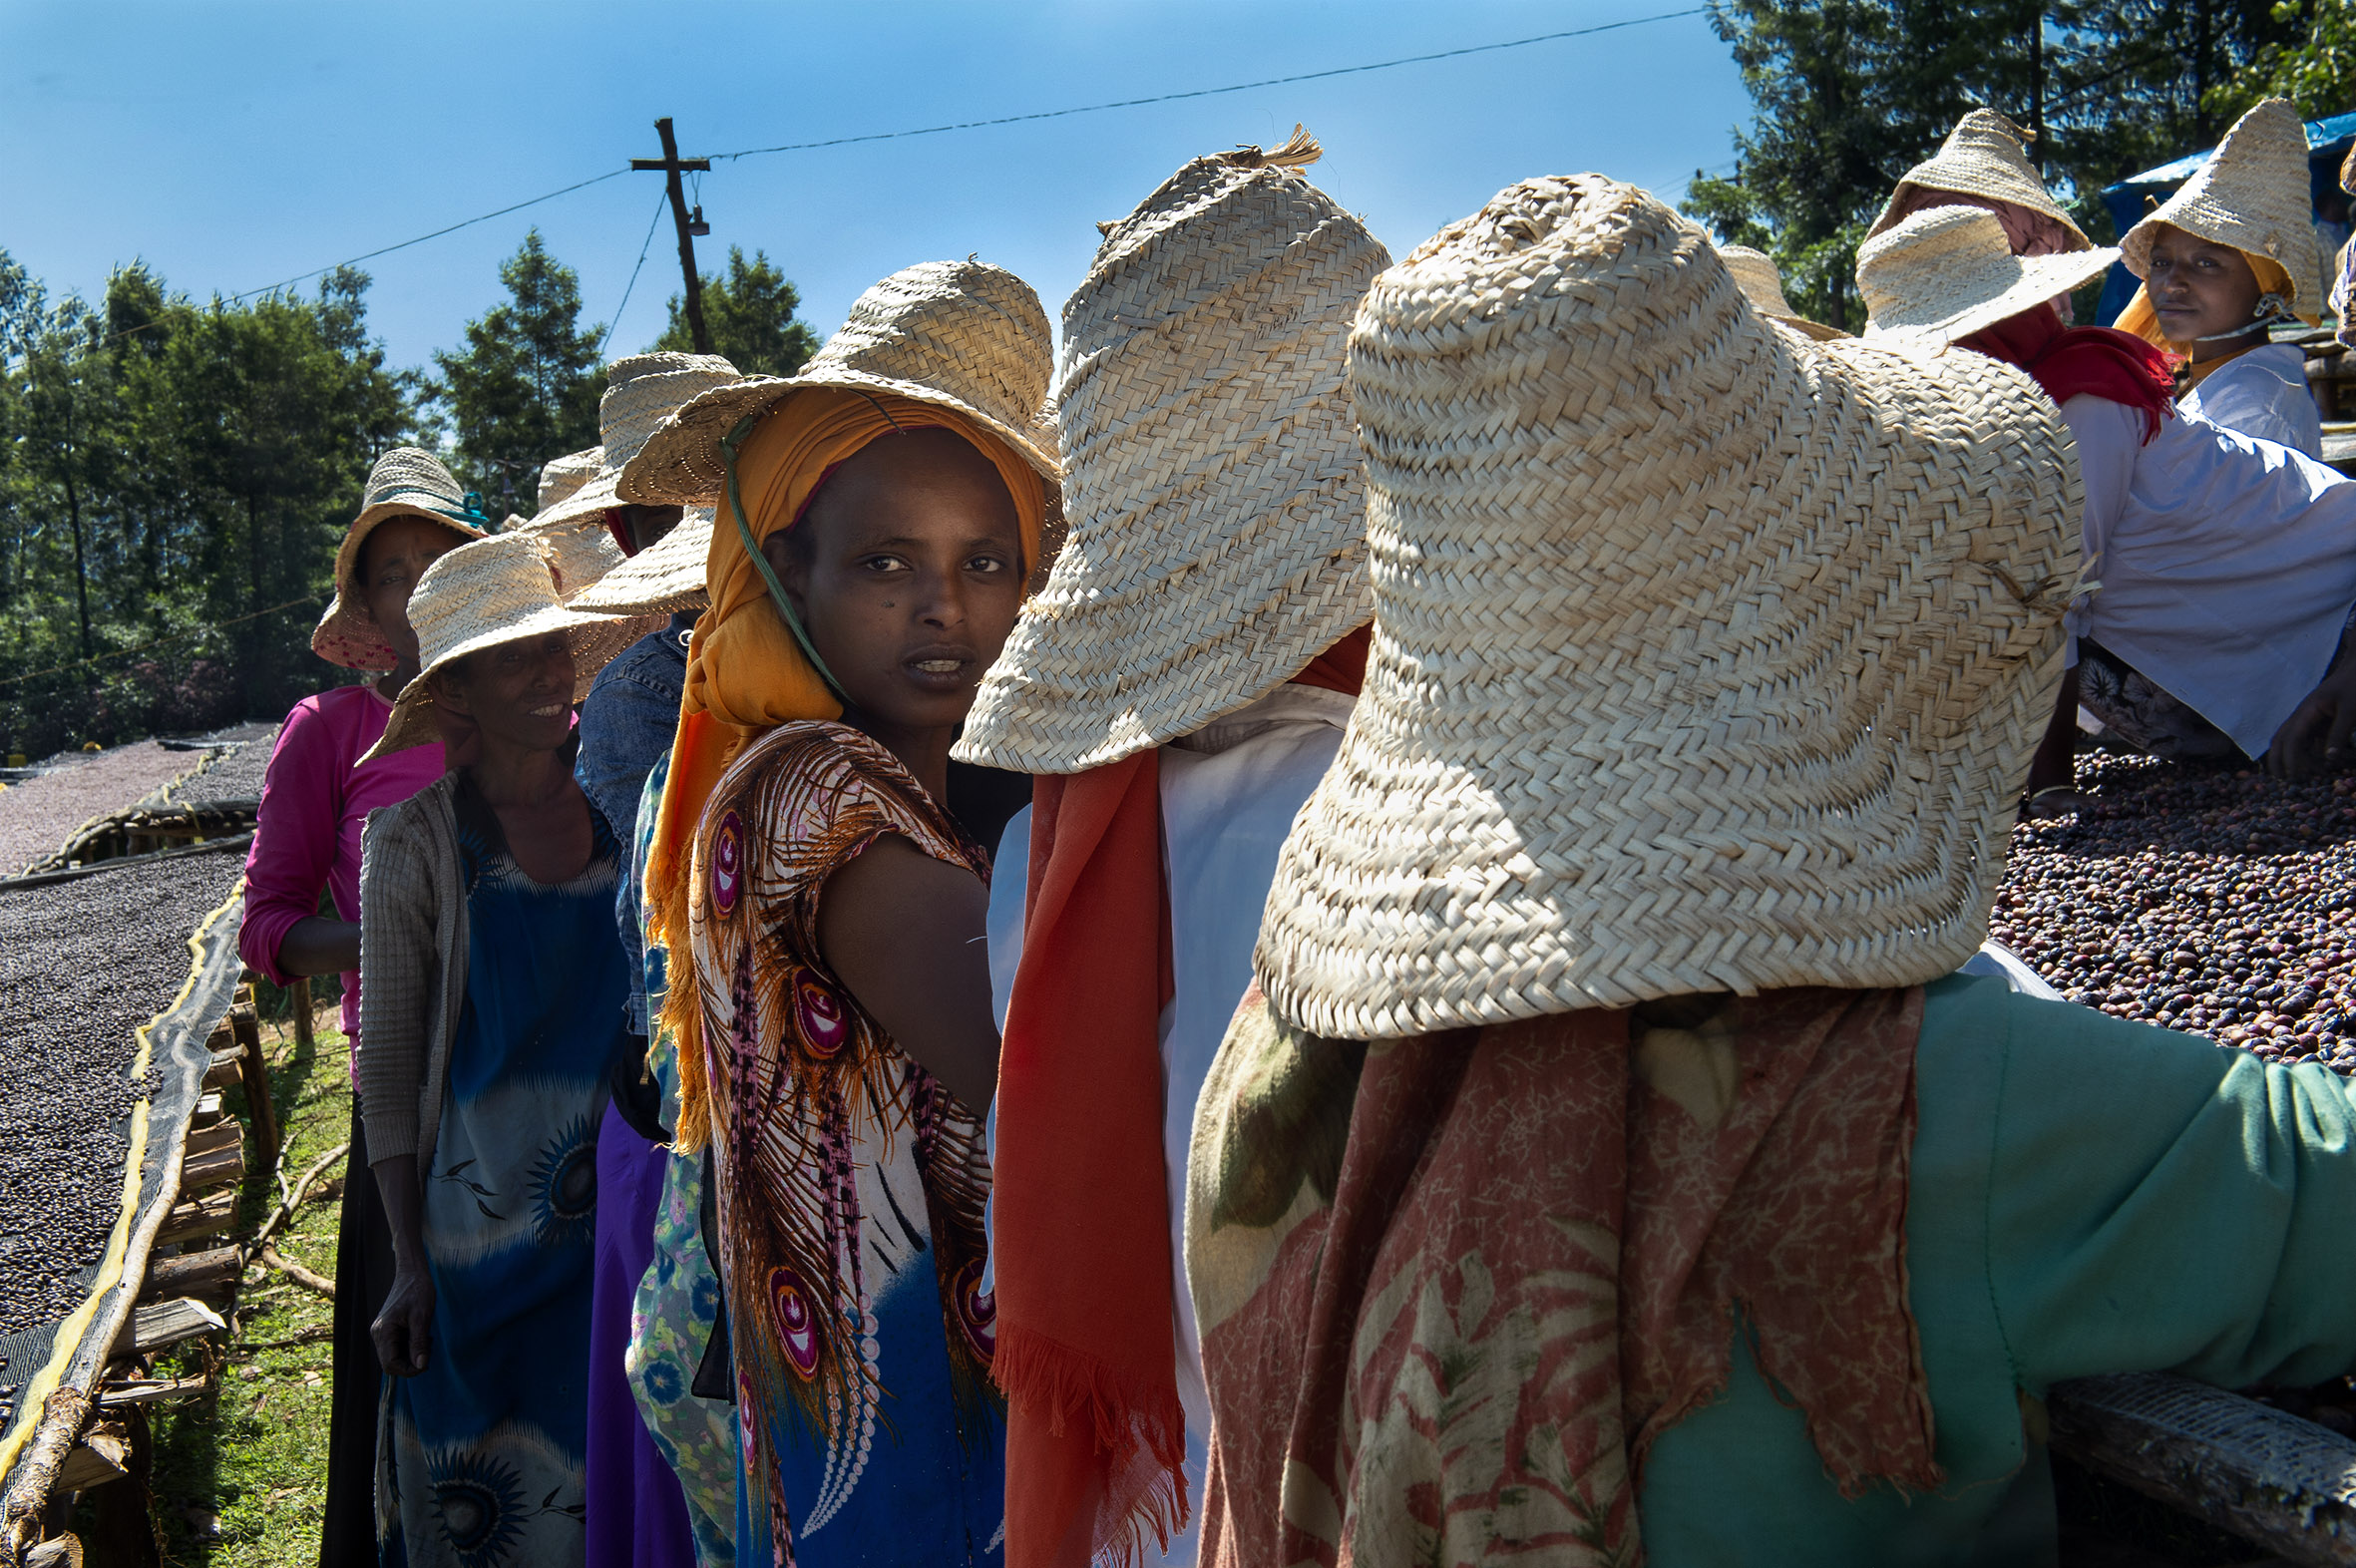 Mujeres etíopes participan en una iniciativa impulsada por la AECID en favor del desarrollo rural y los derechos de las mujeres. Foto: Miguel Lizana/ AECID